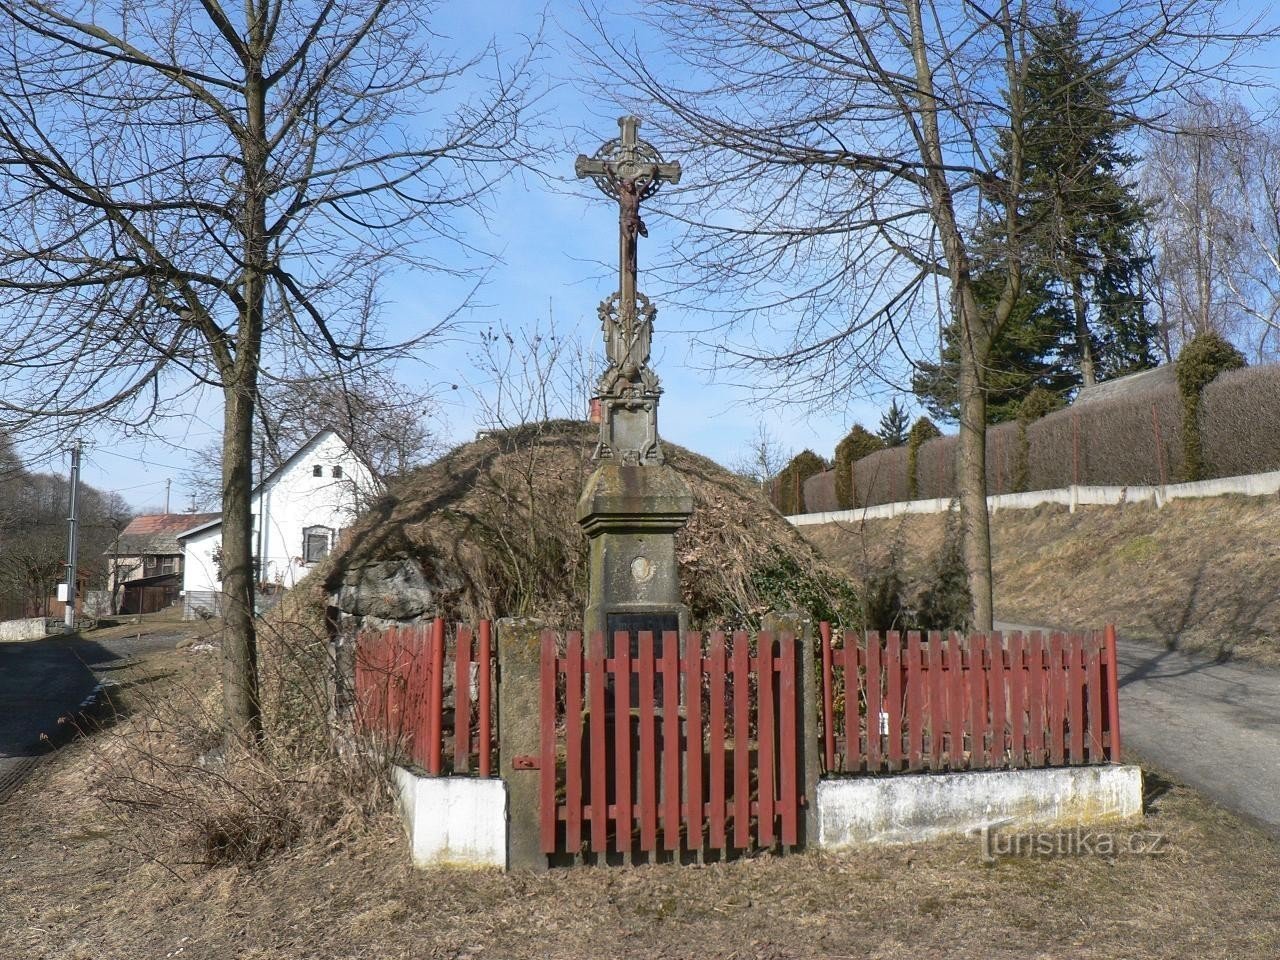 Velenovy, križ v vasi